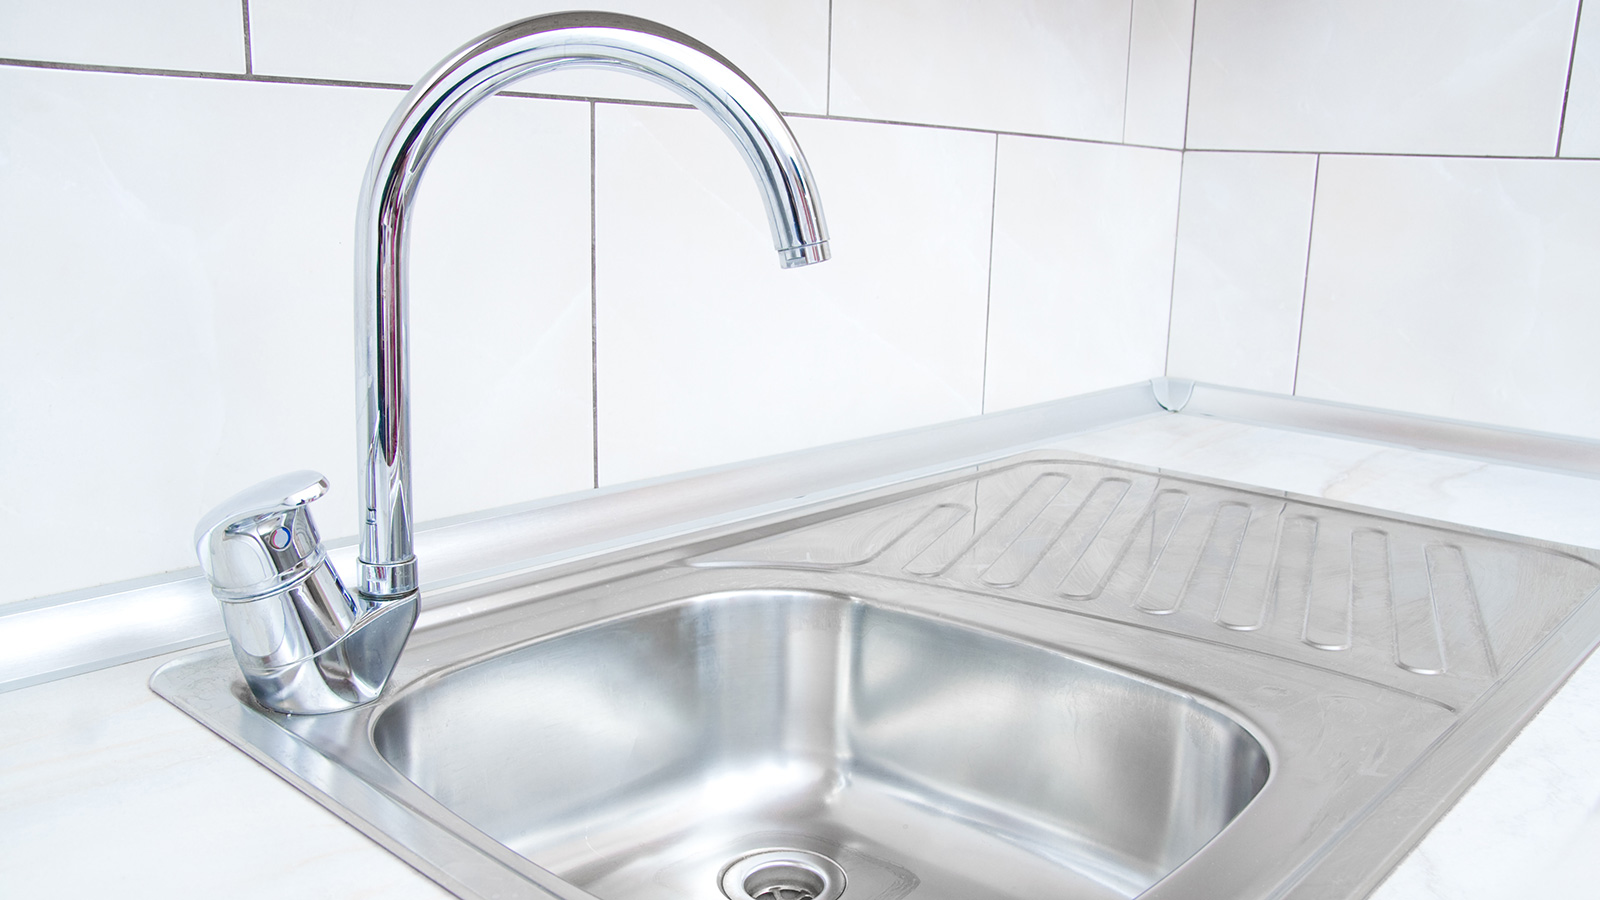 ‪أحواض المطبخ تحتوي على بكتيريا برازية أكثر من حوض المرحاض‬ (غيتي)